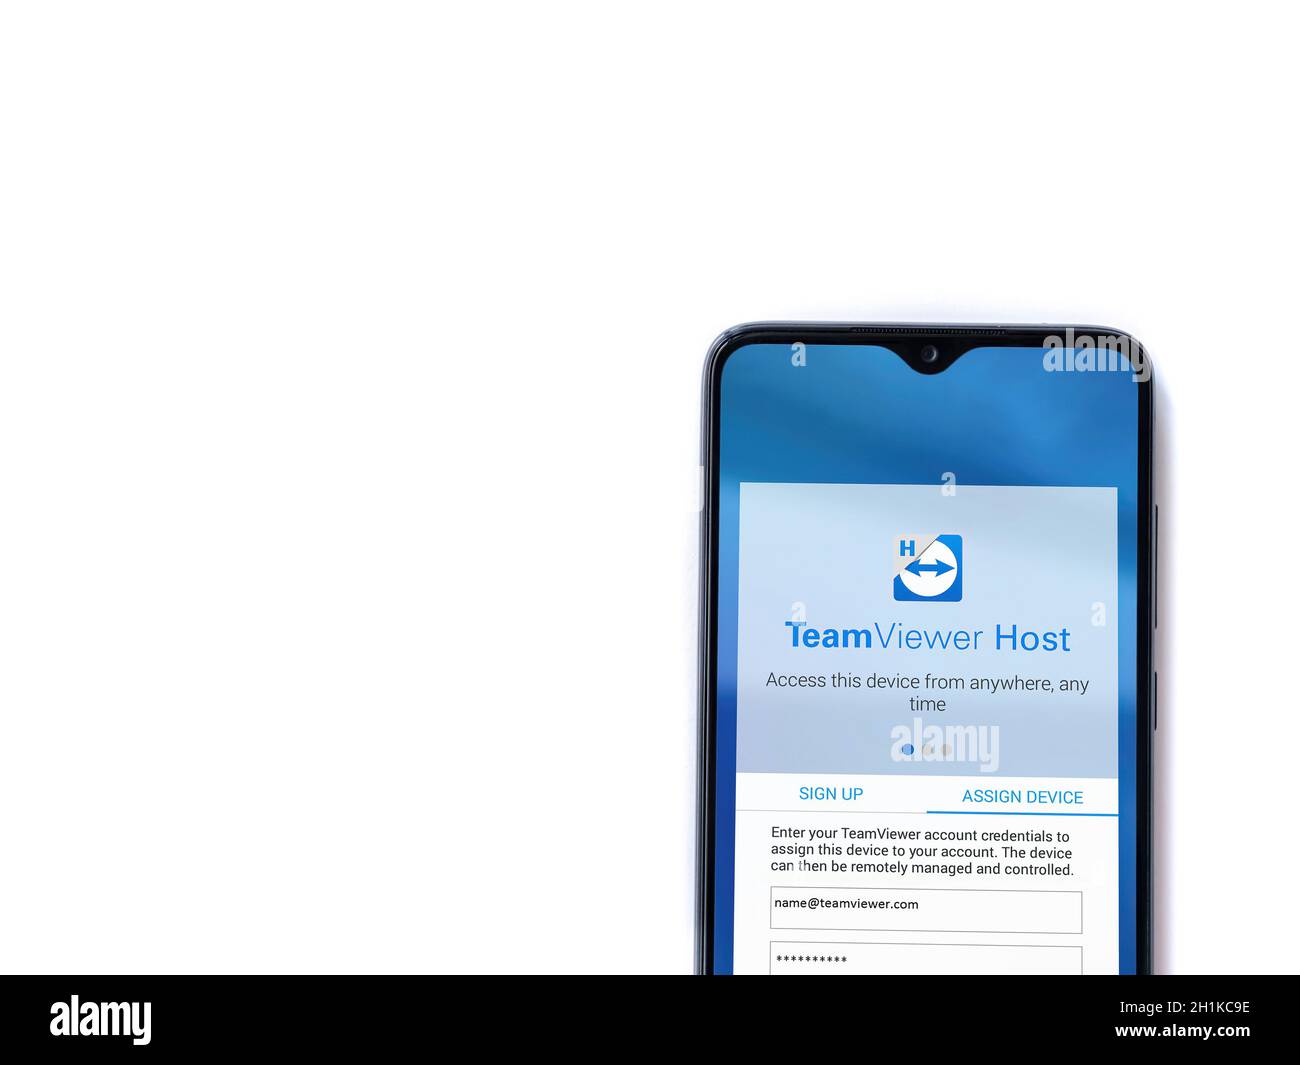 TeamViewer Host: Đón xem hình ảnh đầy chất lượng về giao diện của phần mềm TeamViewer Host trên iPhone XR với nền đen hoặc trắng. Sử dụng phần mềm này để kết nối với máy tính từ xa để quản lý dữ liệu và làm việc hiệu quả. Chờ gì nữa mà không xem!